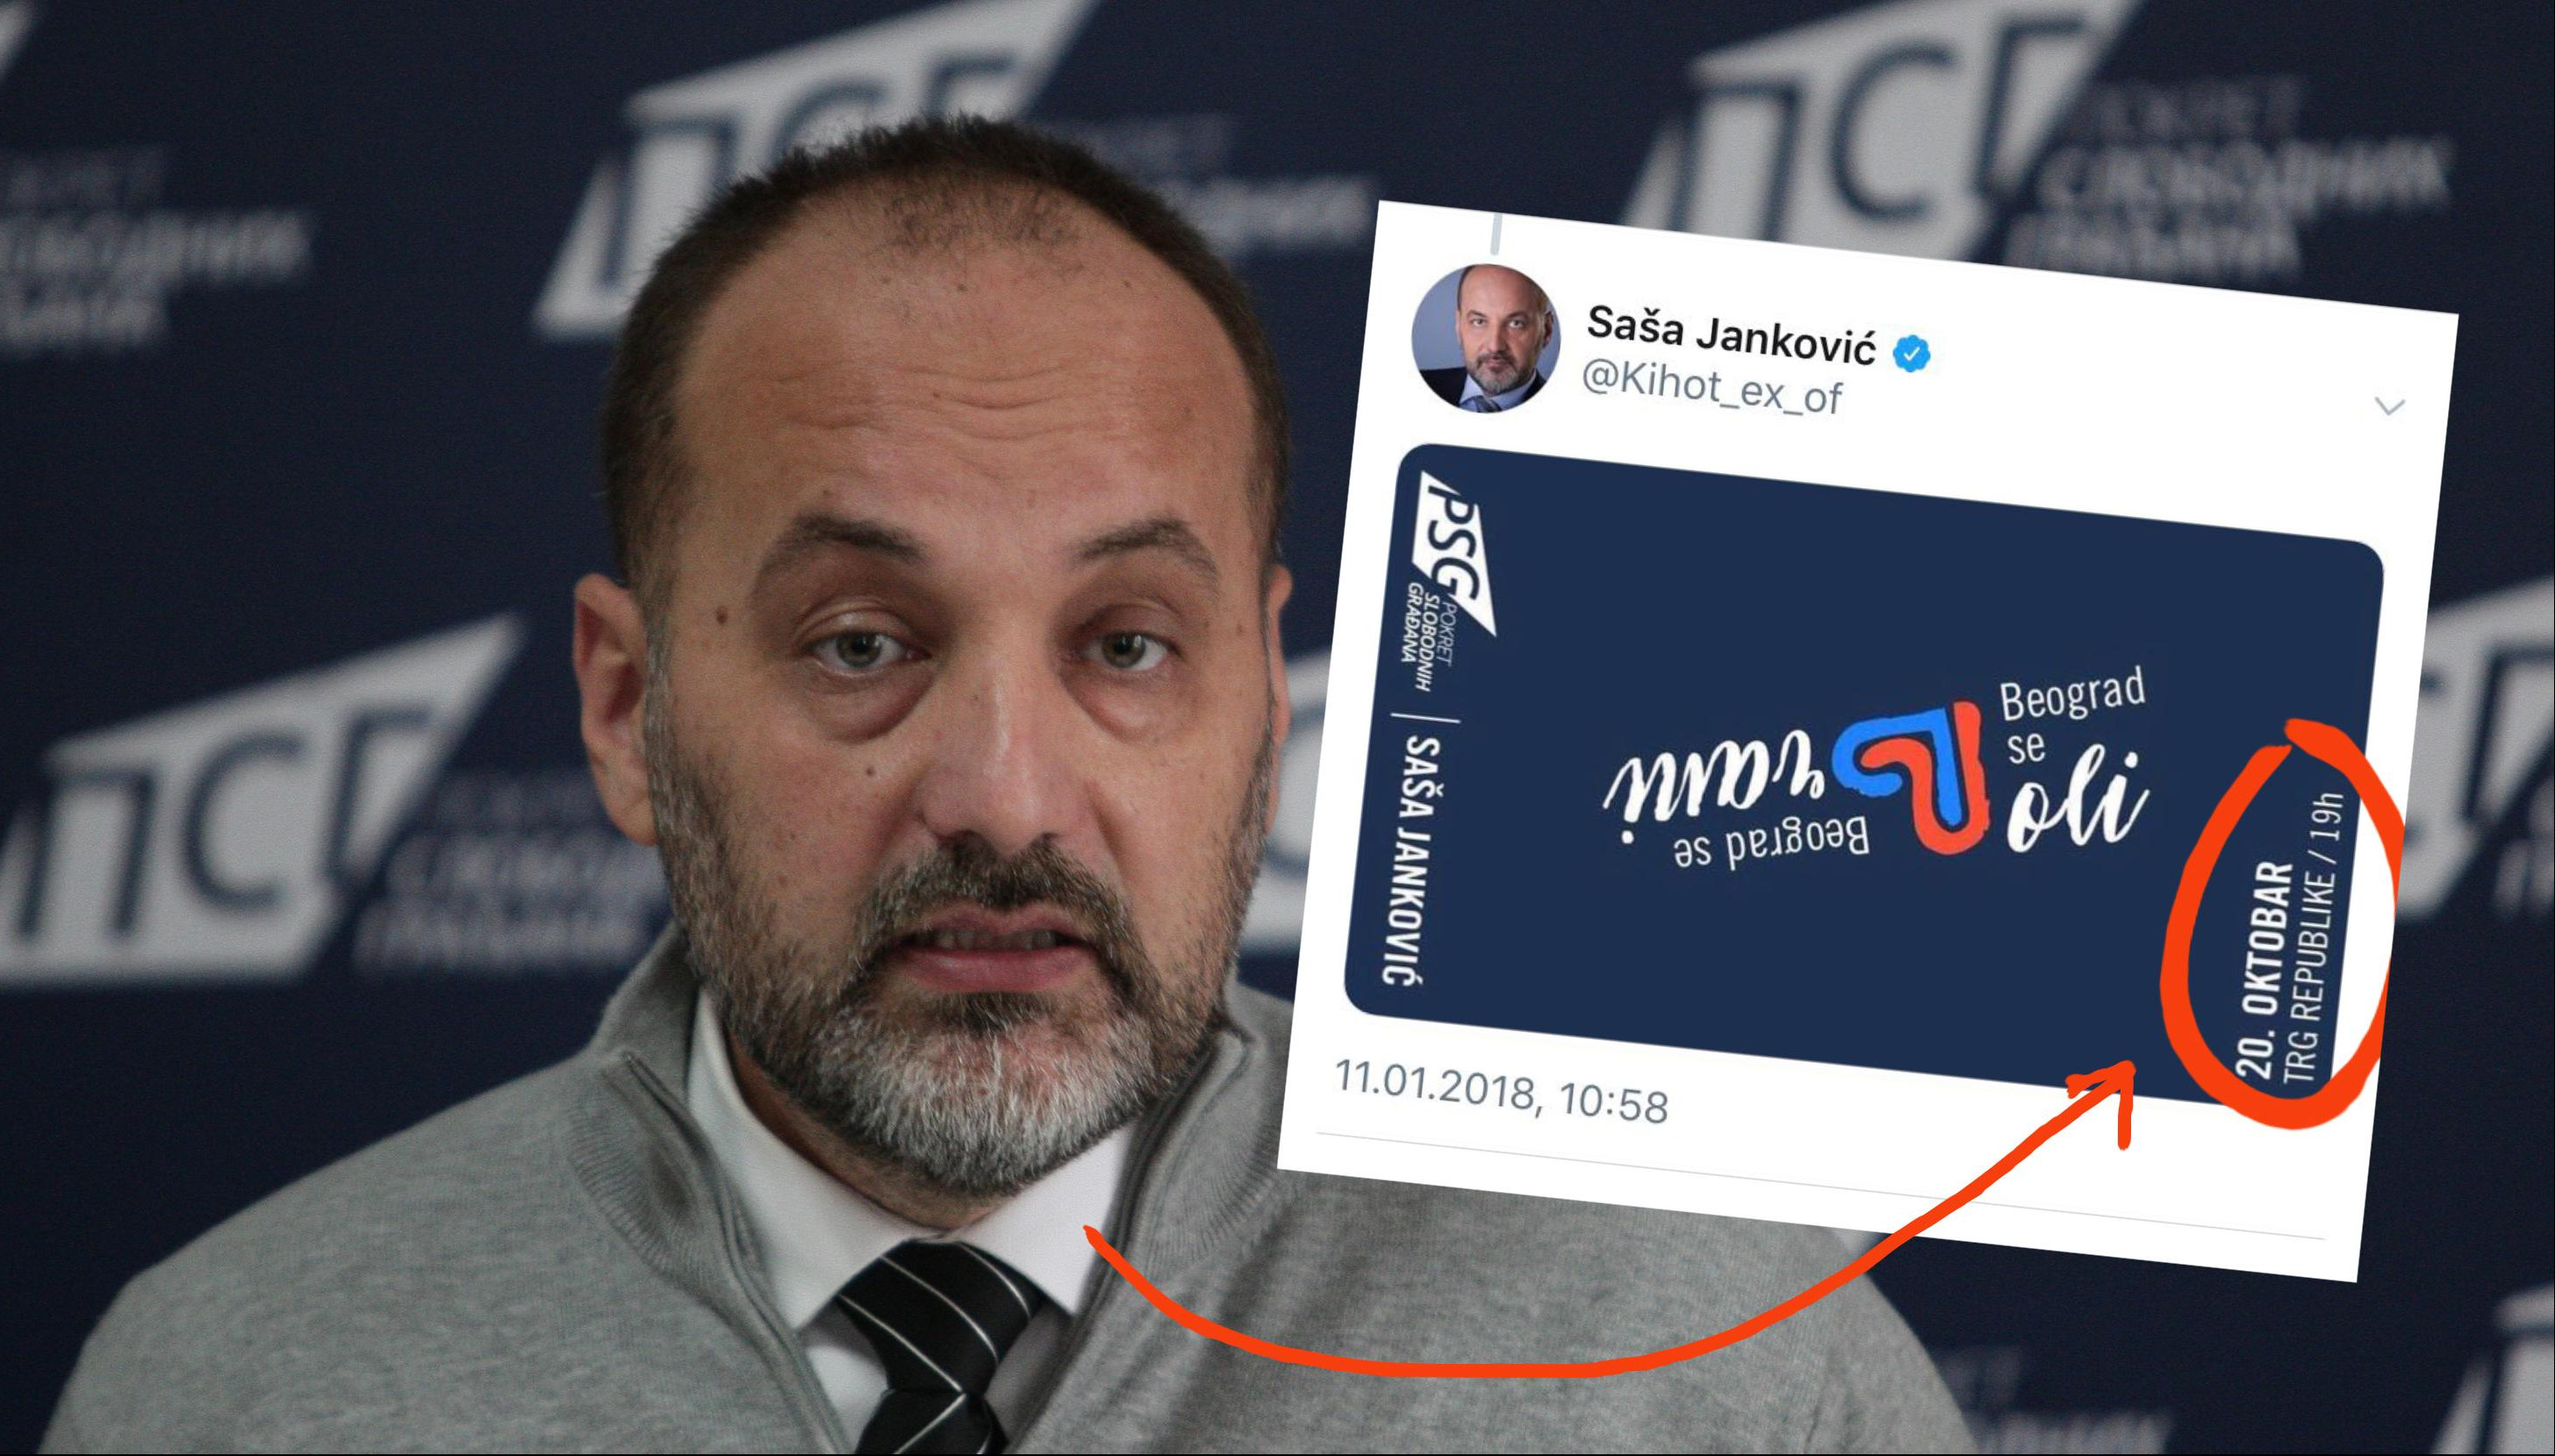 NEMOJ DA SE GRČIŠ, KUPI KALENDAR! Janković objavio izborni slogan PSG, ali promašio datum!